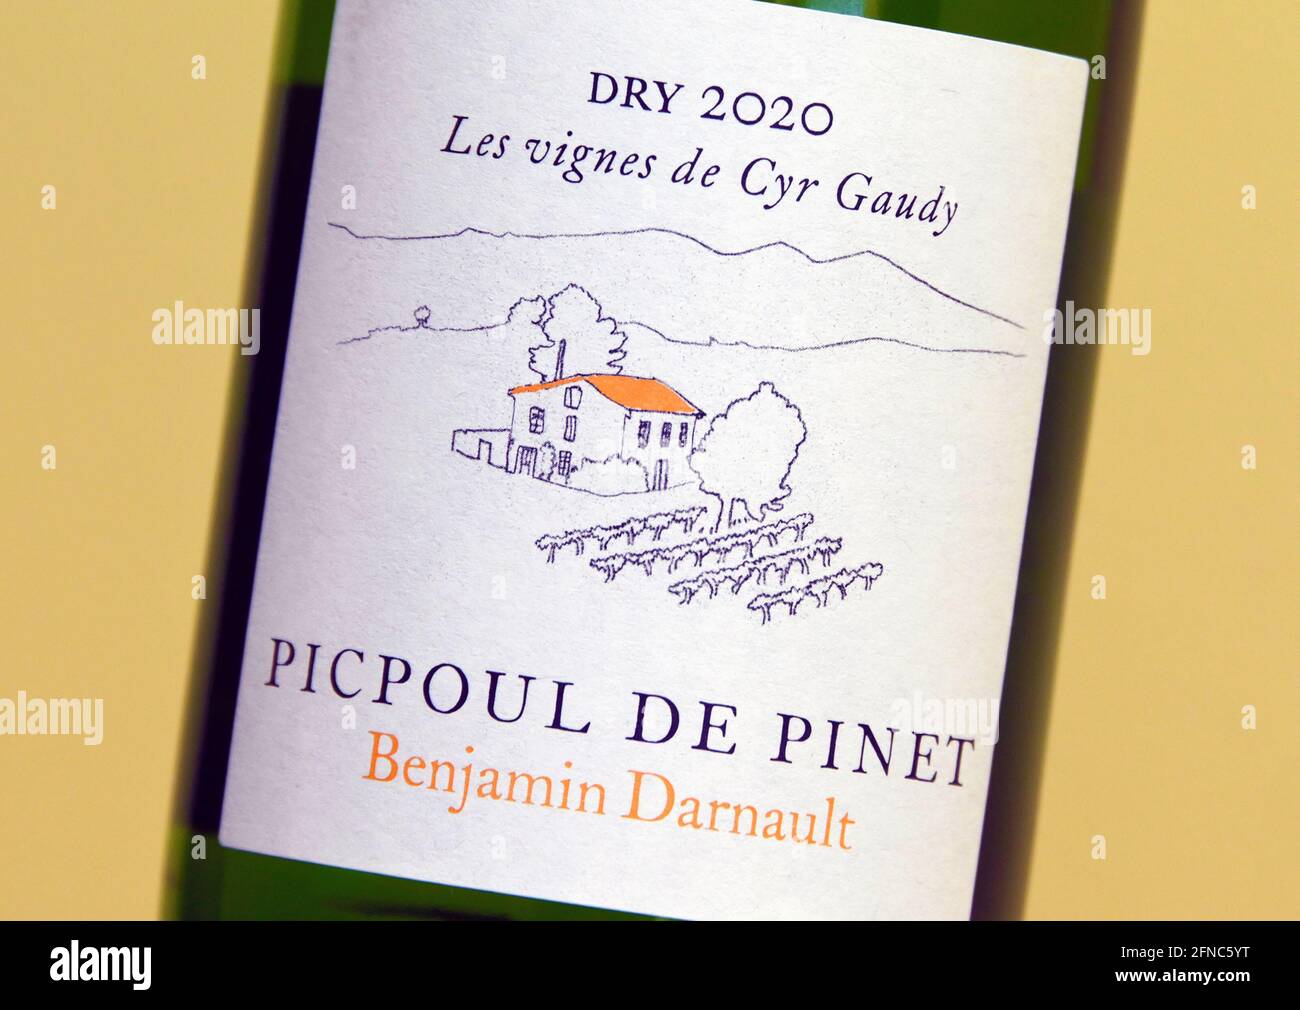 Wine label. Picpoul de Pinet. Benjamin Darnault. Dry 2020. Les vignes de Cyr Gaudy. Stock Photo